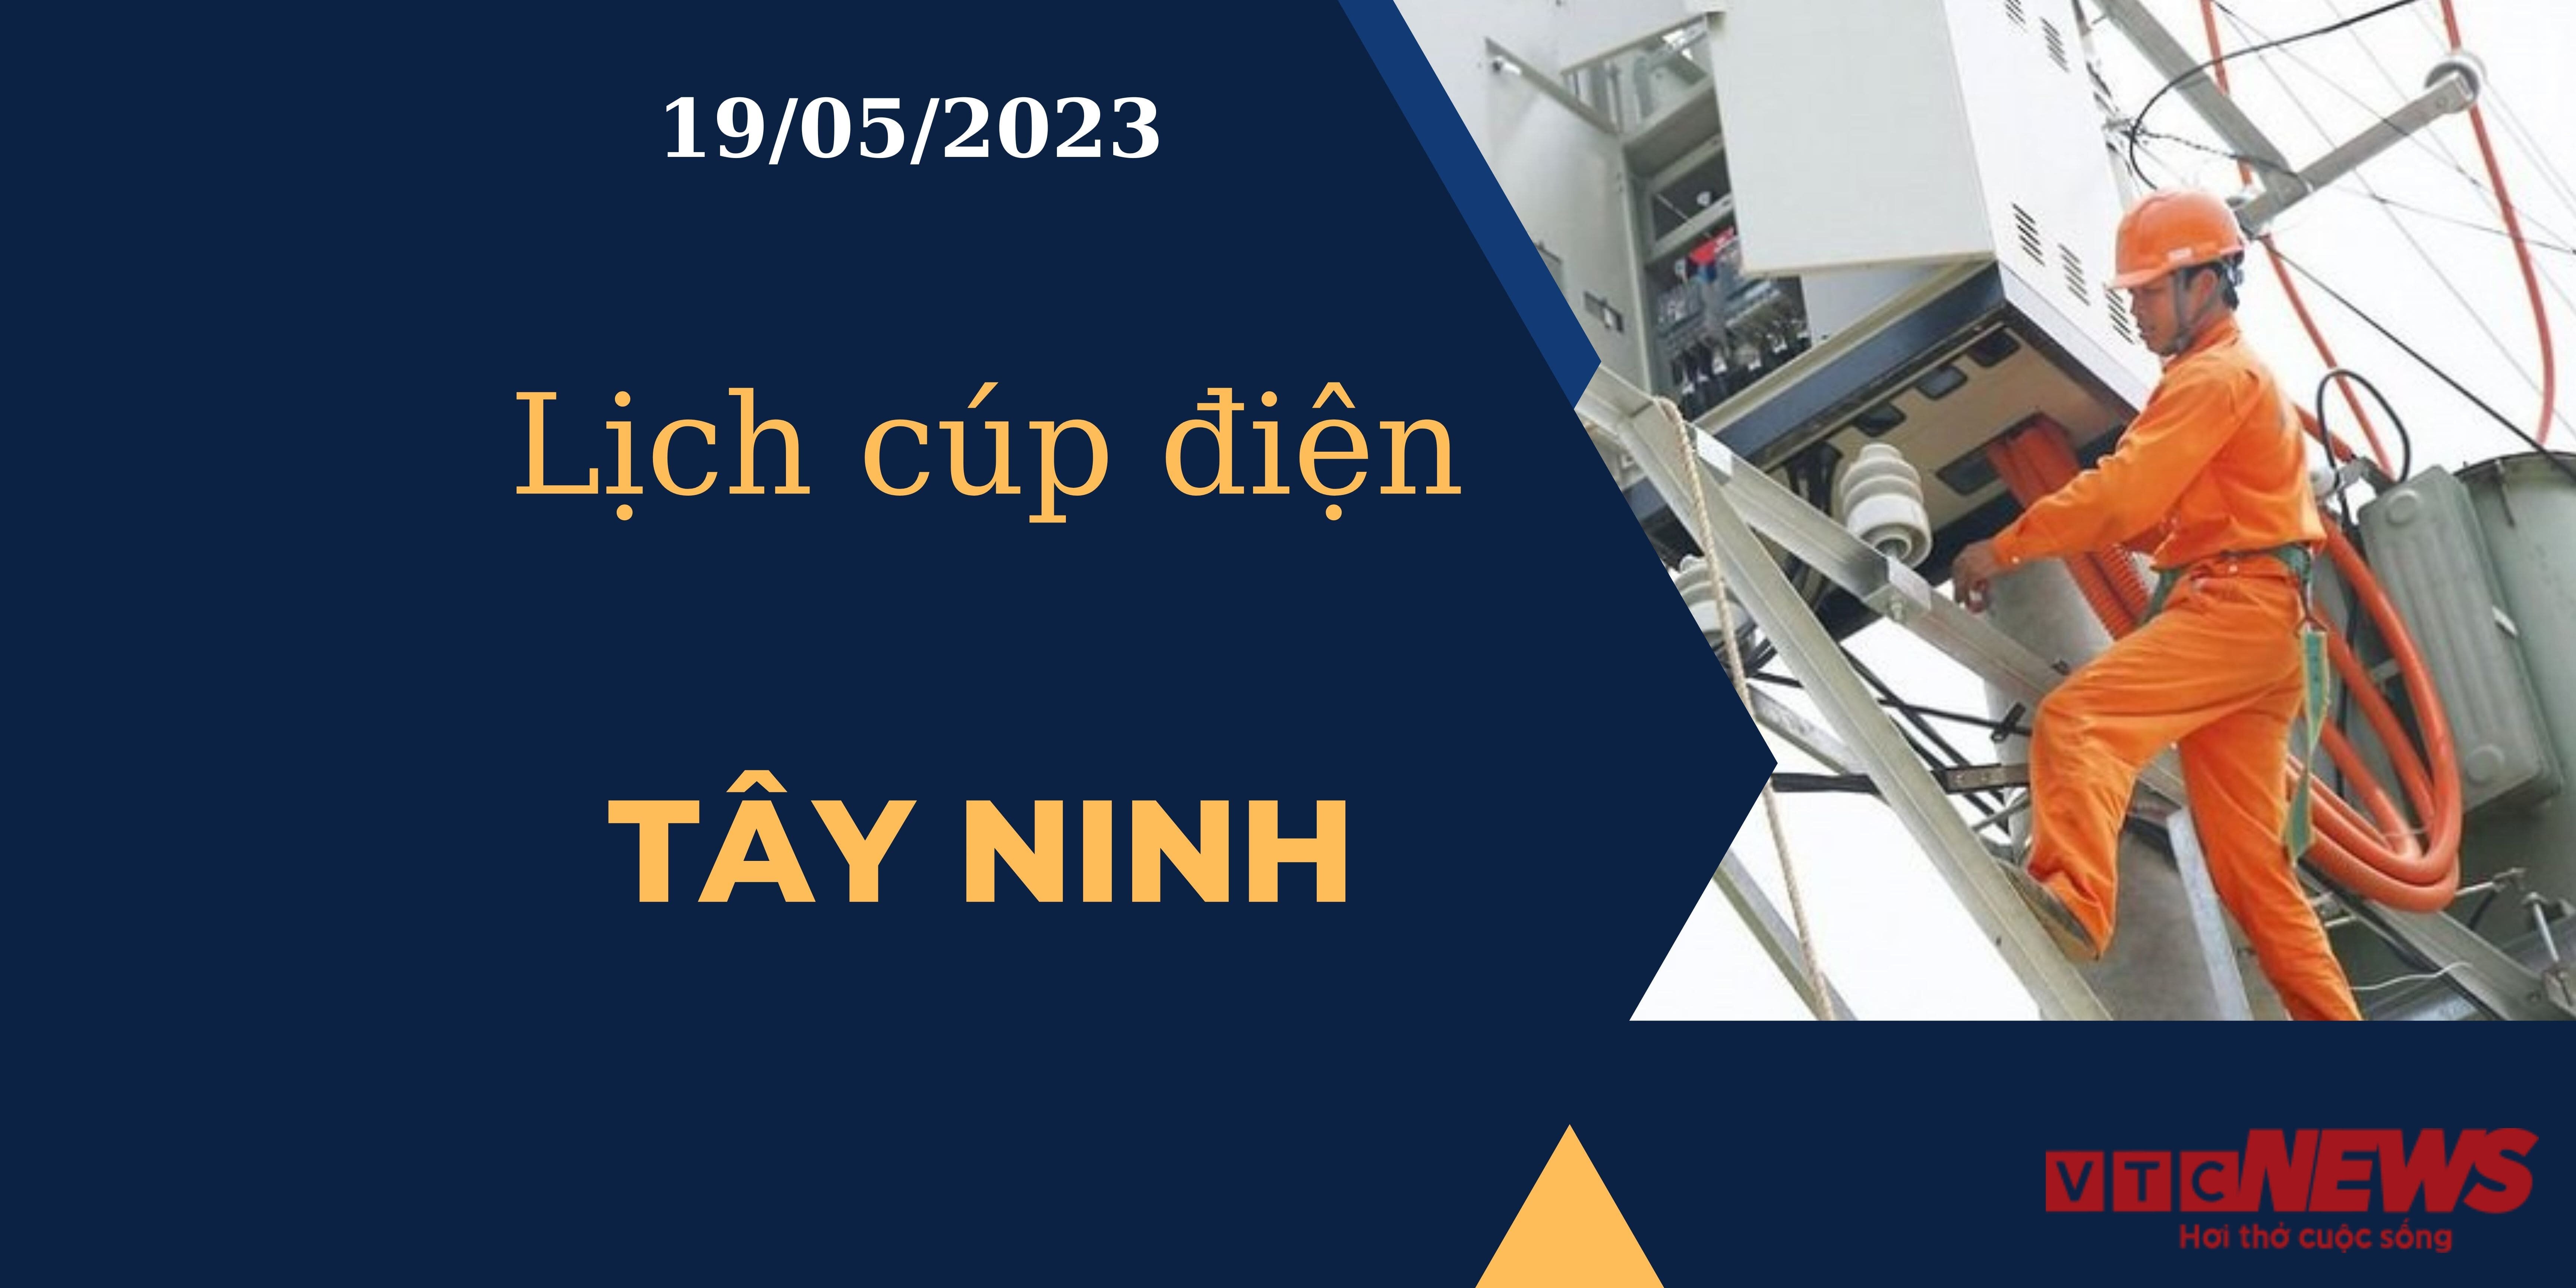 Lịch cúp điện hôm nay ngày 19/05/2023 tại Tây Ninh - 1